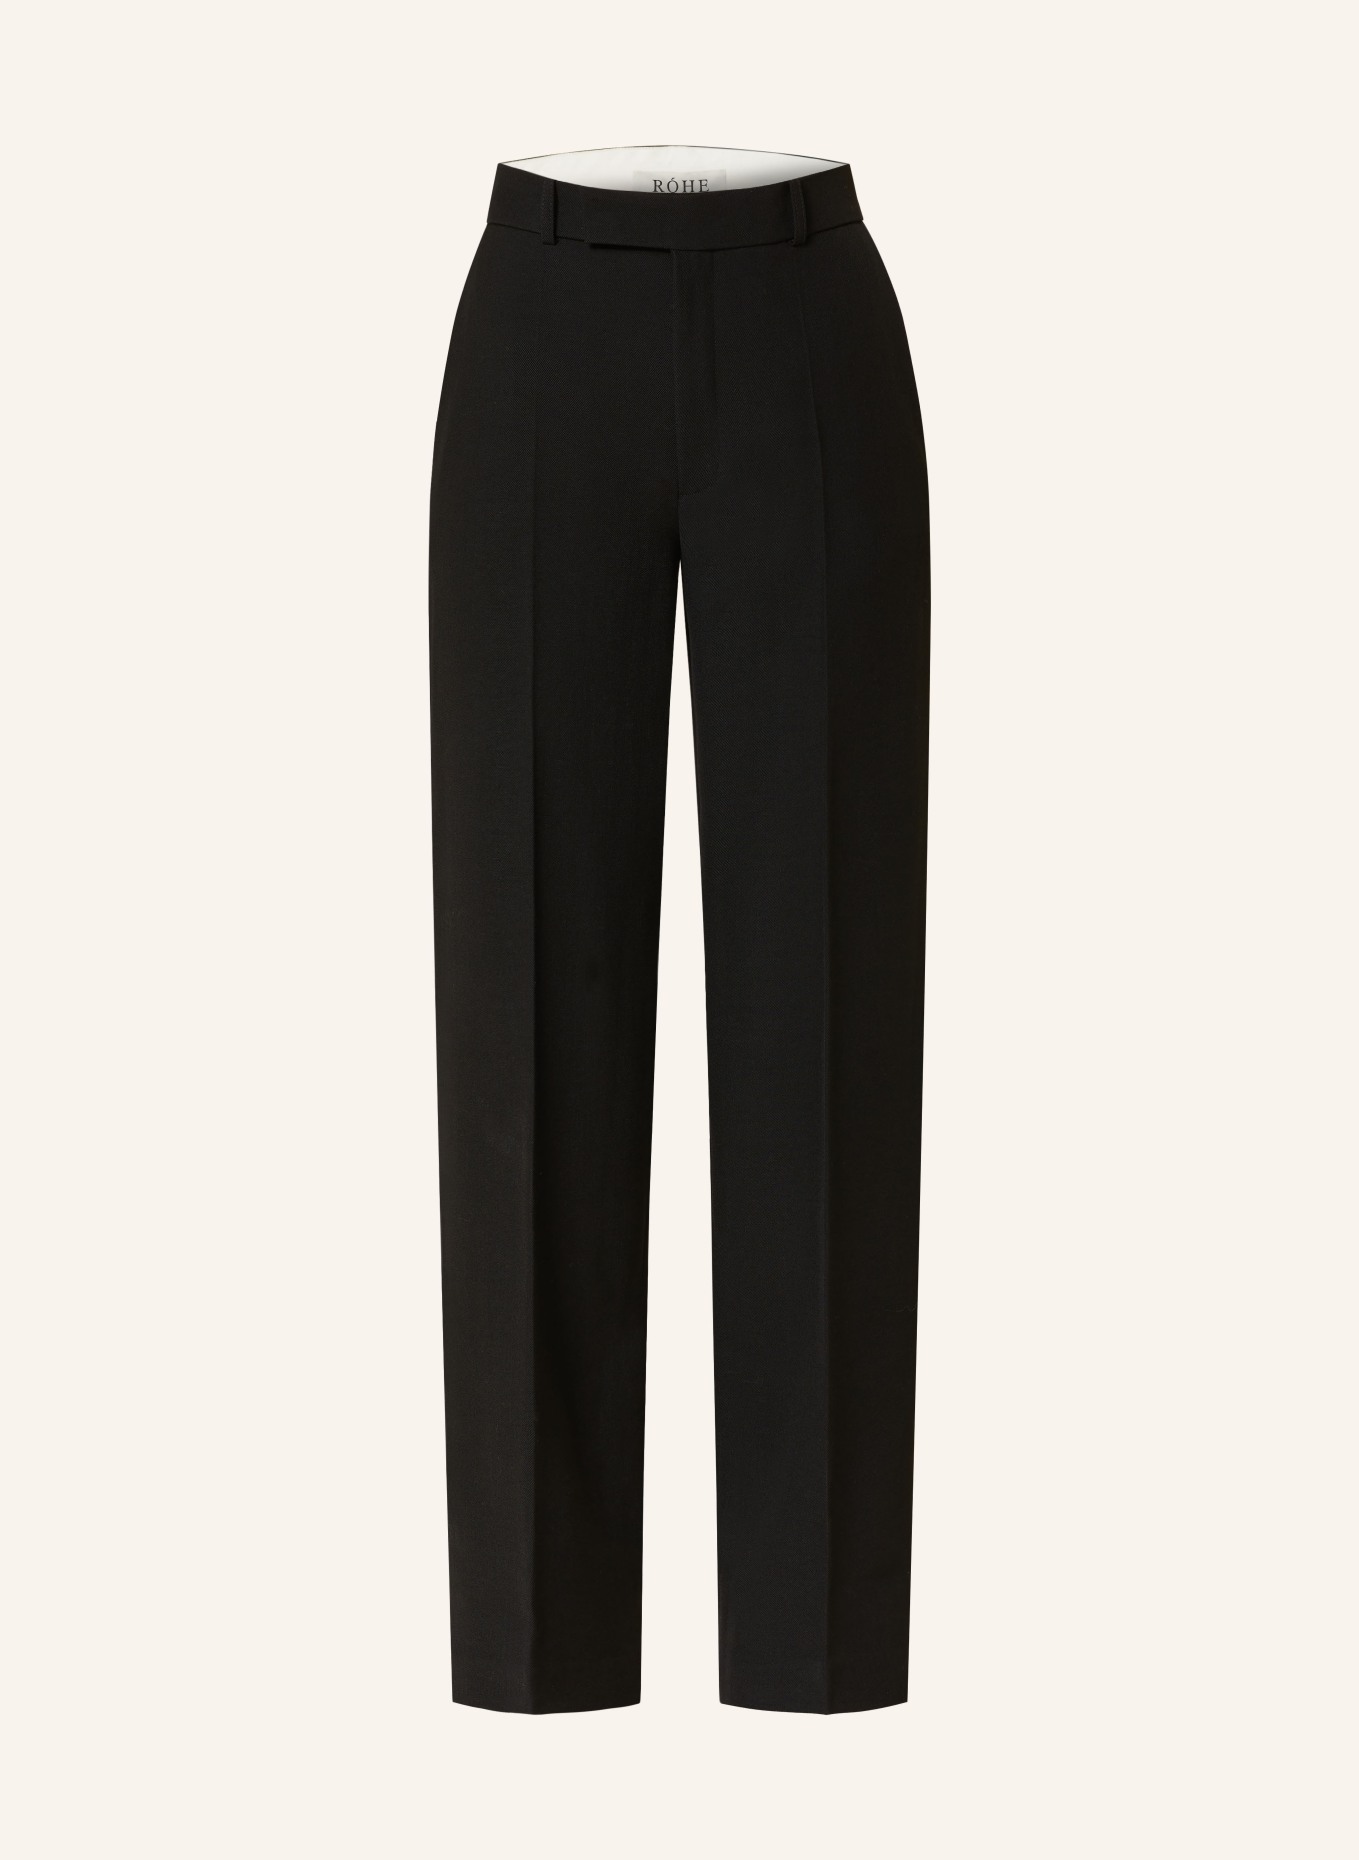 RÓHE Wide leg trousers, Color: BLACK (Image 1)